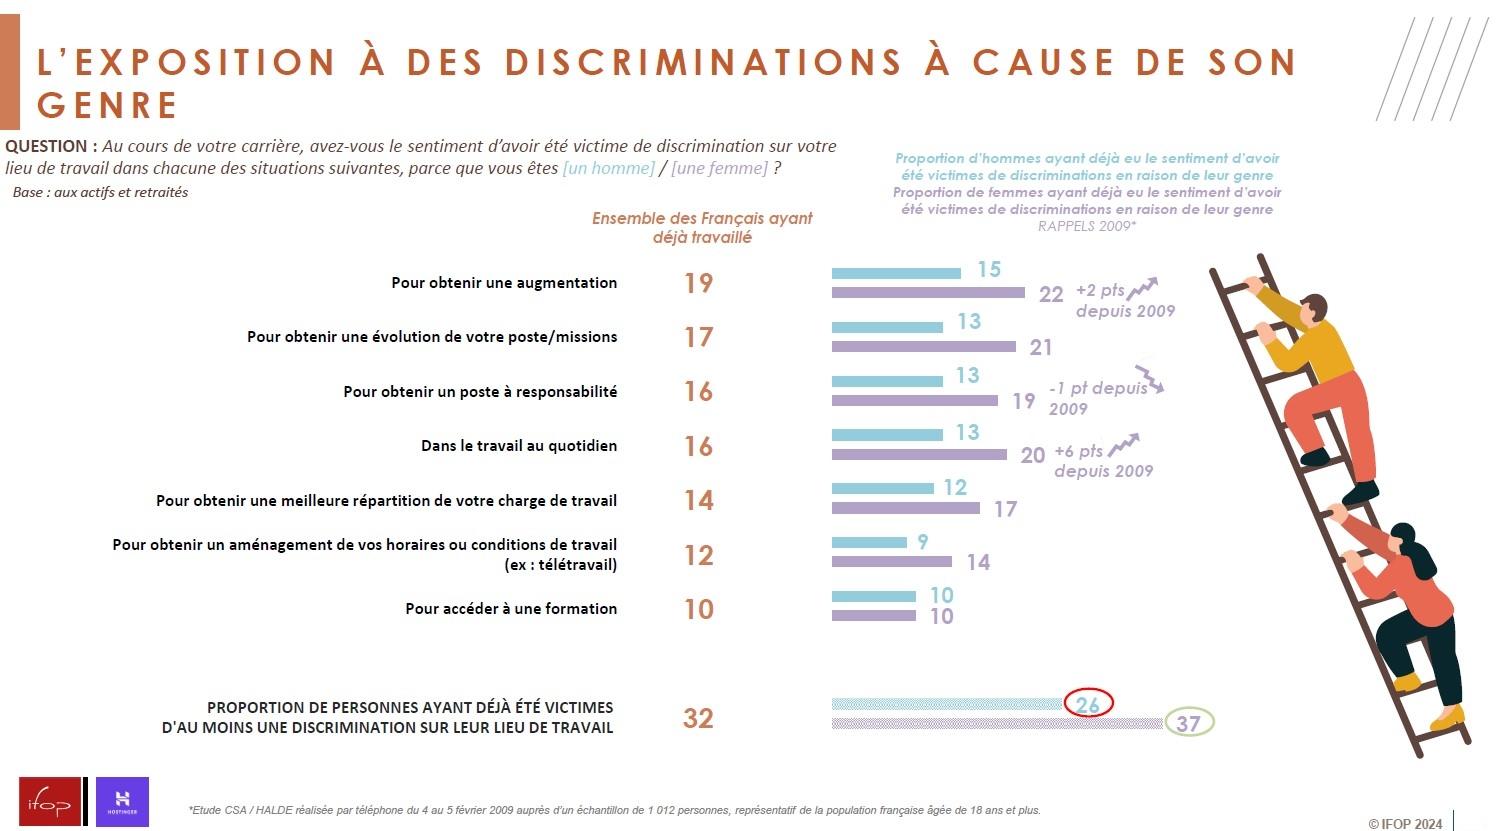 Infographie montrant la proportion de personnes ayant été exposées à des discriminations à cause de leur genre.